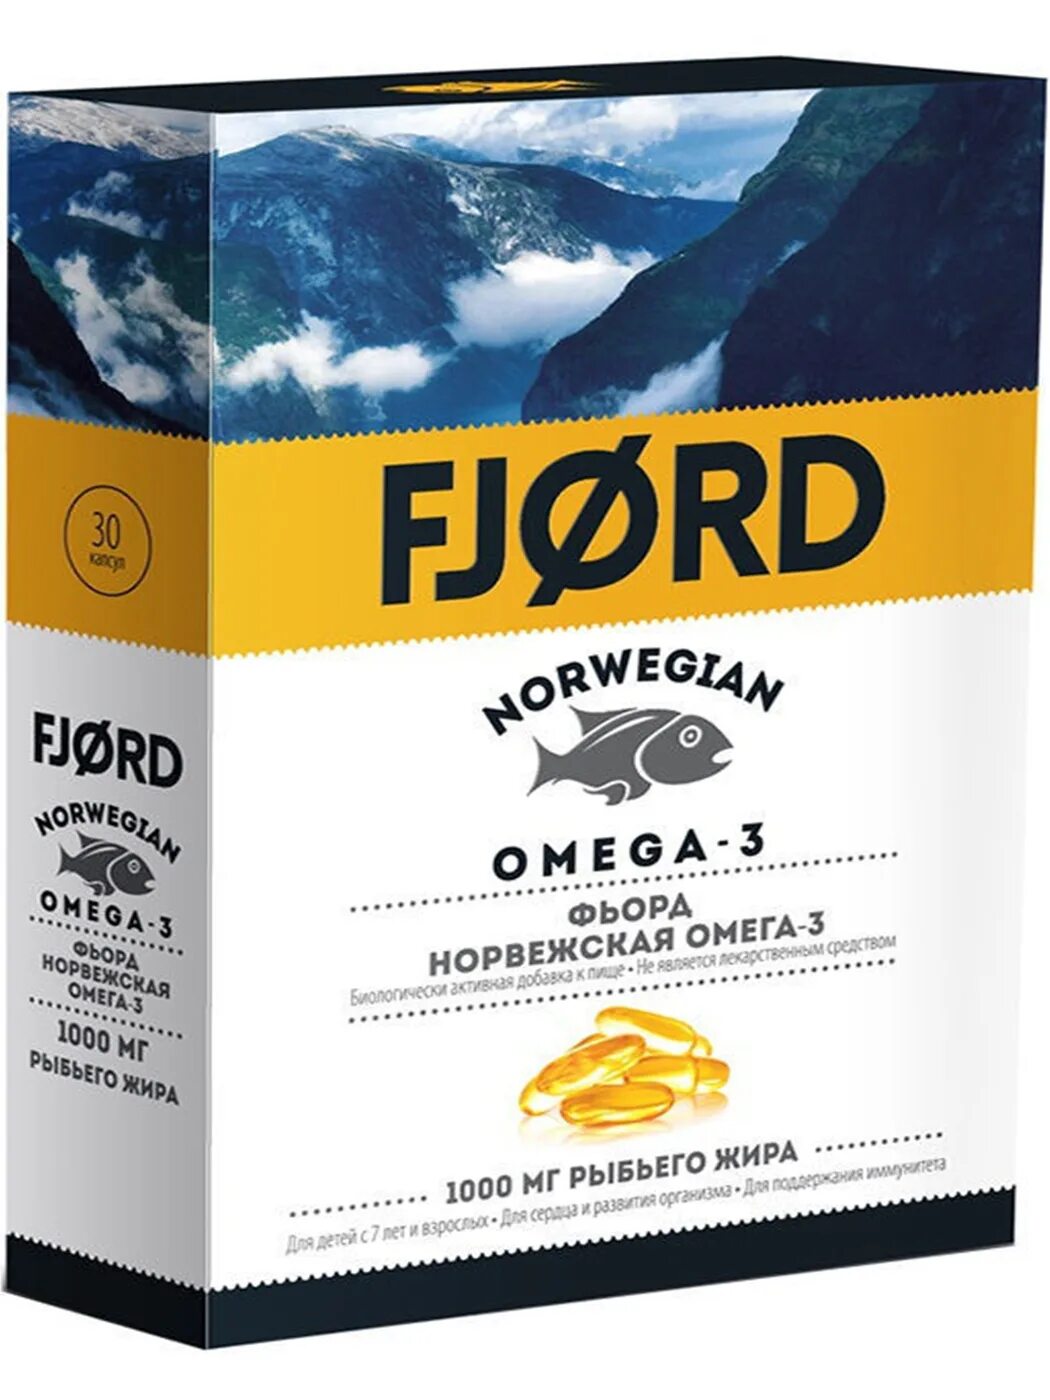 Купить омегу норвежскую. Фьорд Норвежская Омега-3 капсулы. Фьорд Норвежская Омега-3. Рыбий жир Fjord капсулы. Норвежский производитель Омега 3.